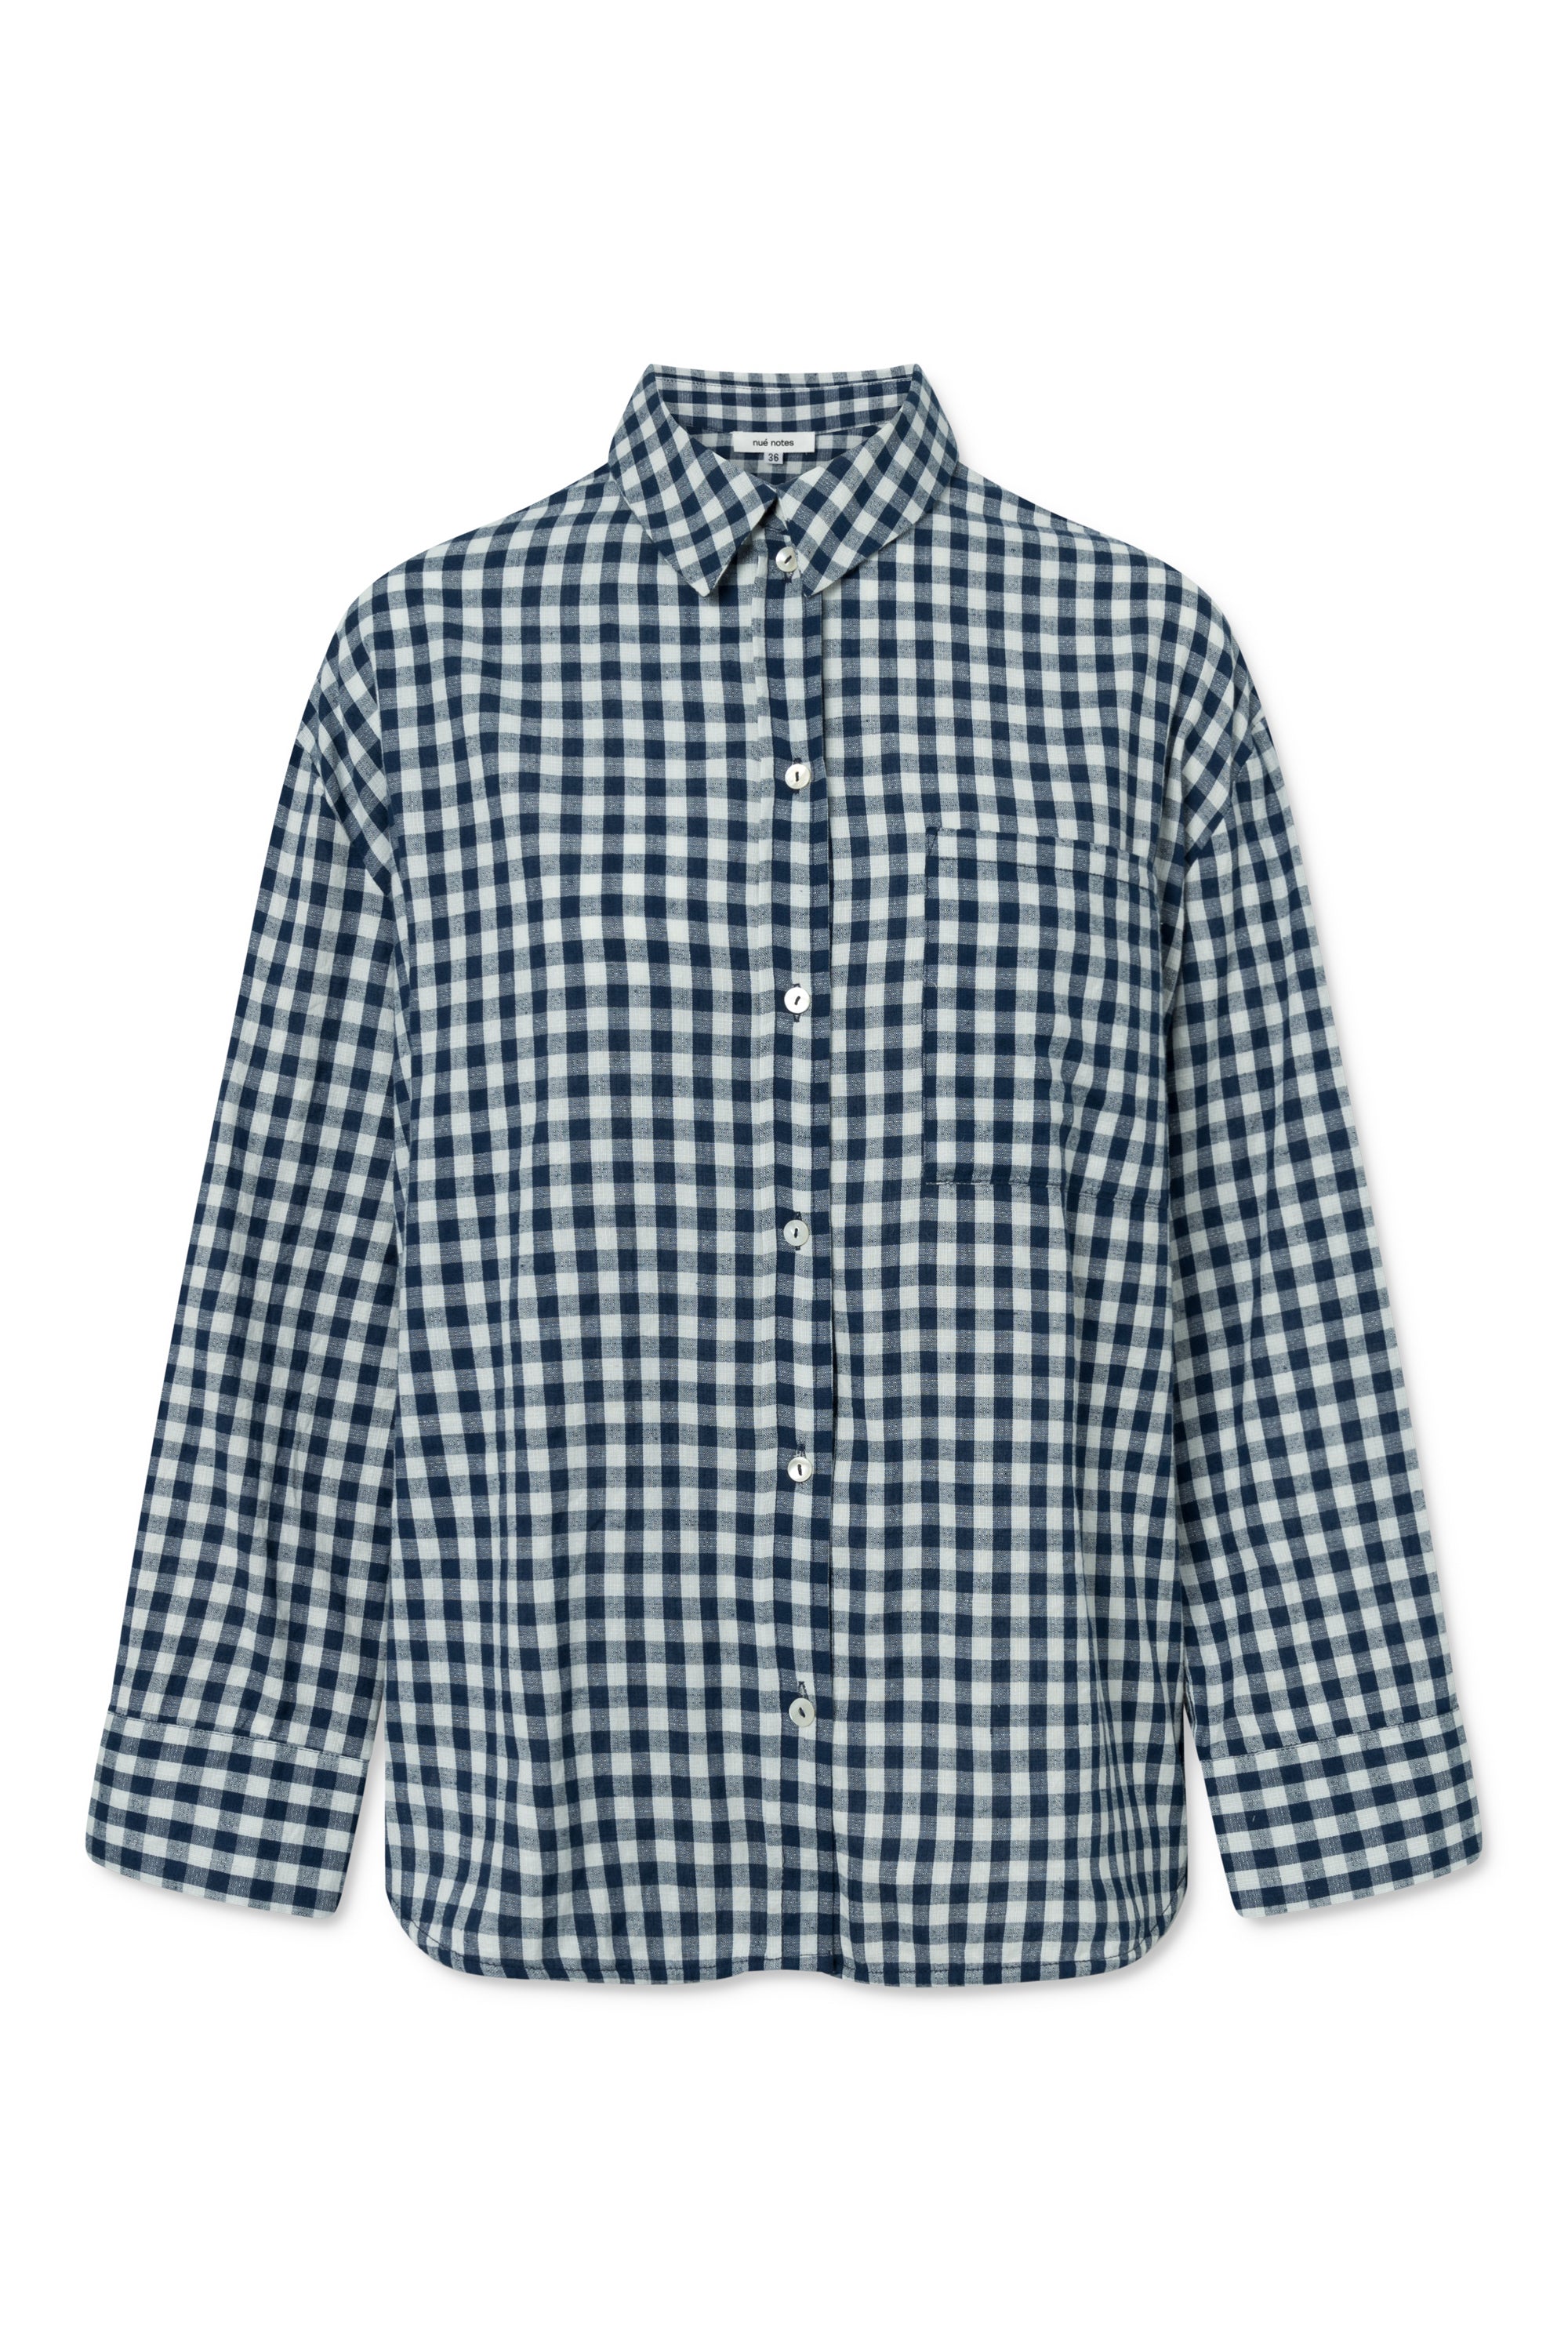 nué notes Alfonso Shirt SHIRTS 422 Blue Check